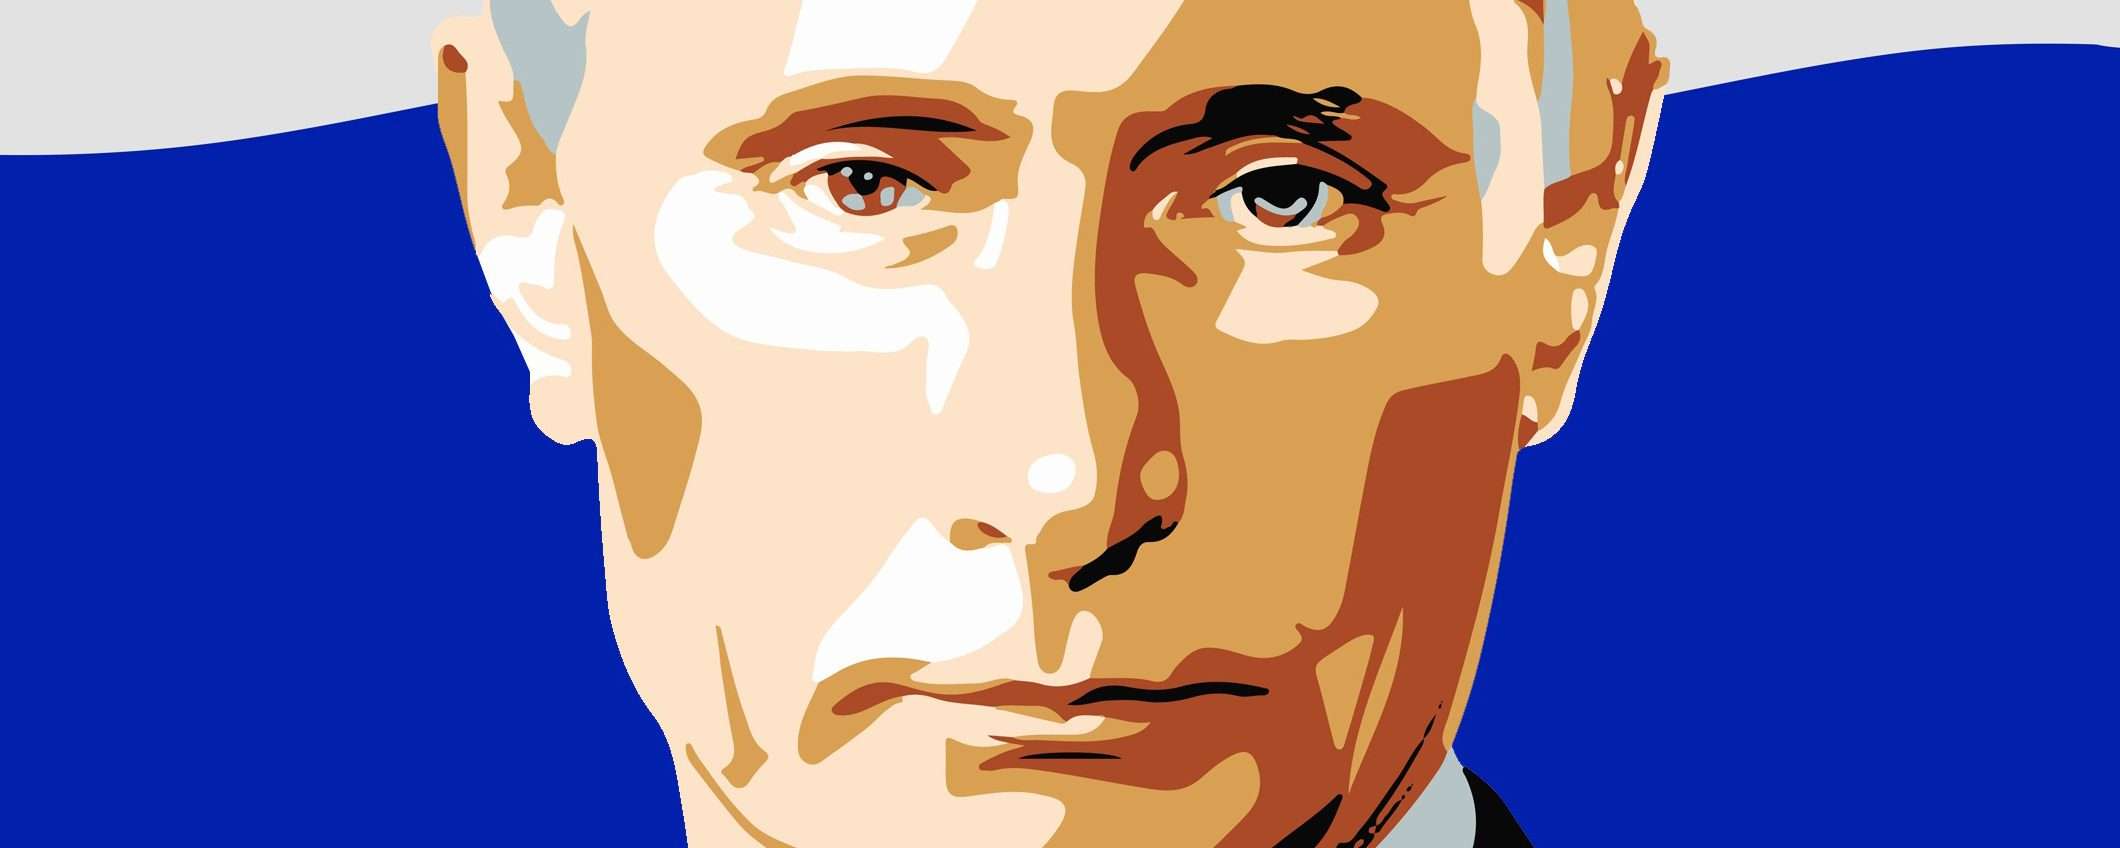 Morte a Putin e agli invasori russi: su Facebook puoi